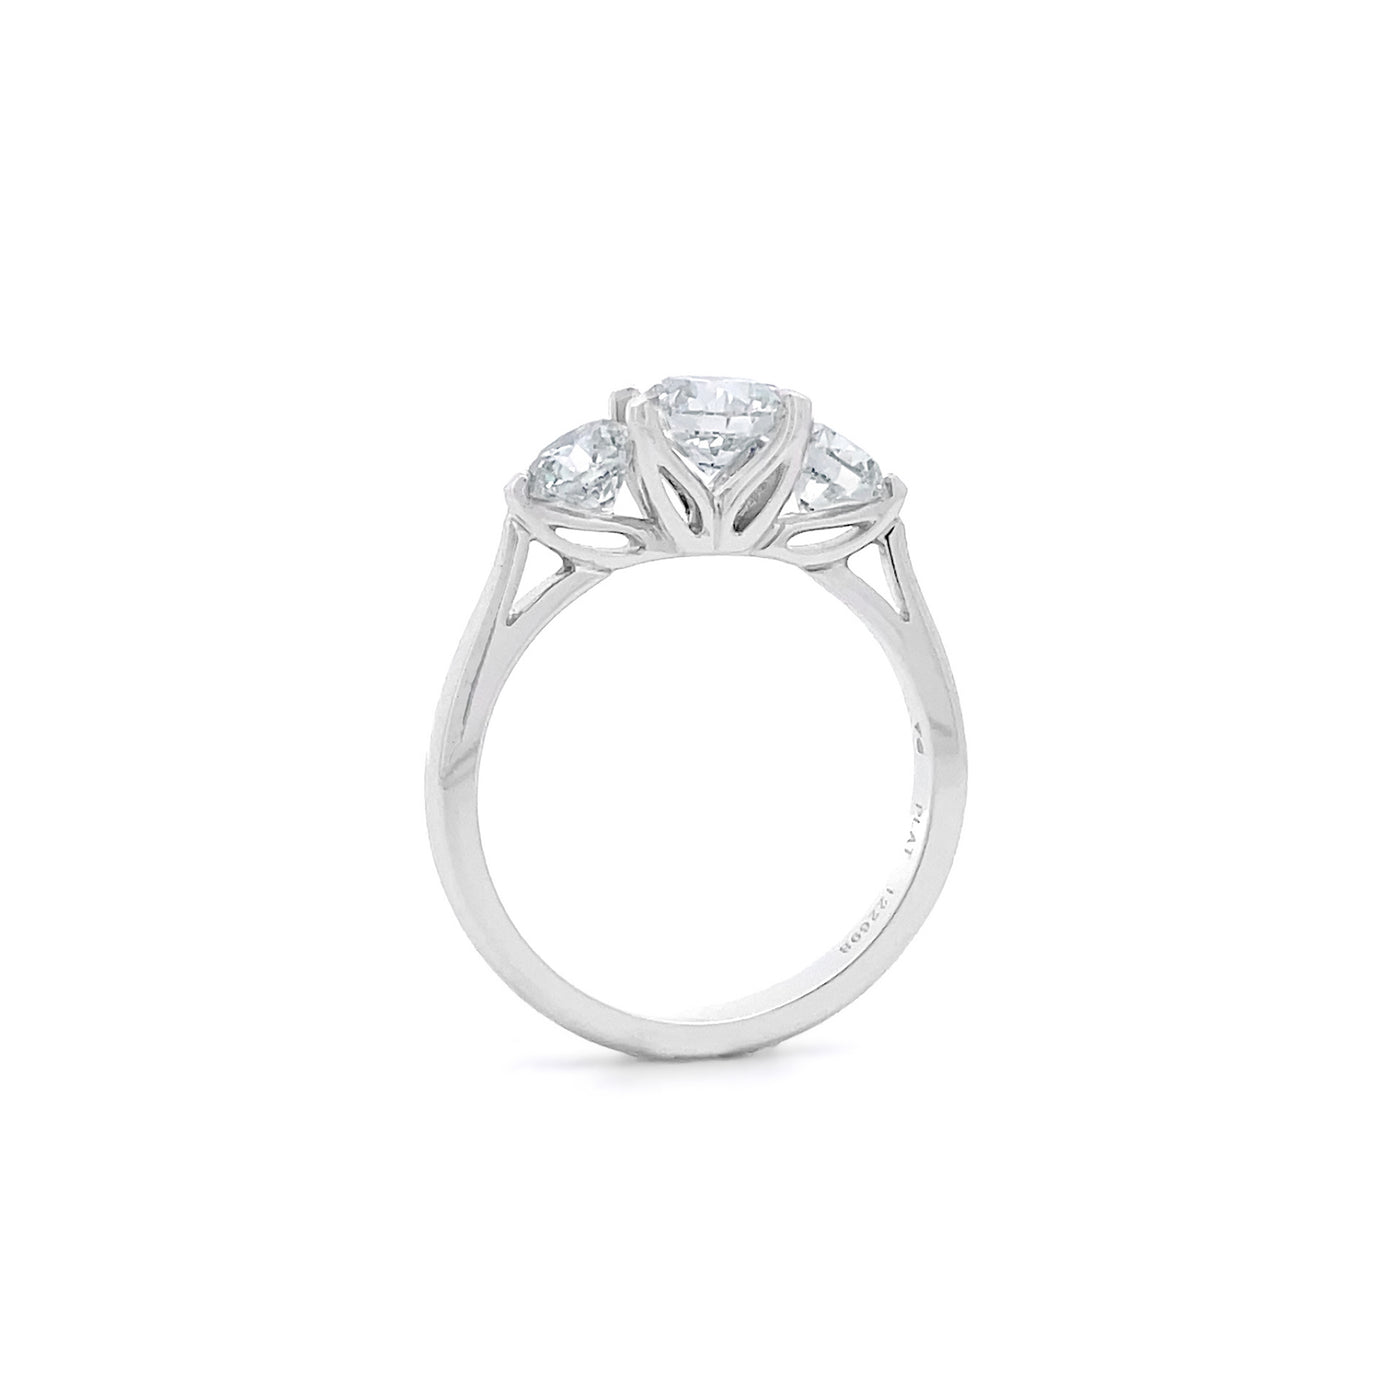 Lotus: Brilliant Cut Diamond Three Stone Ring in Platinum | 1.78ctw